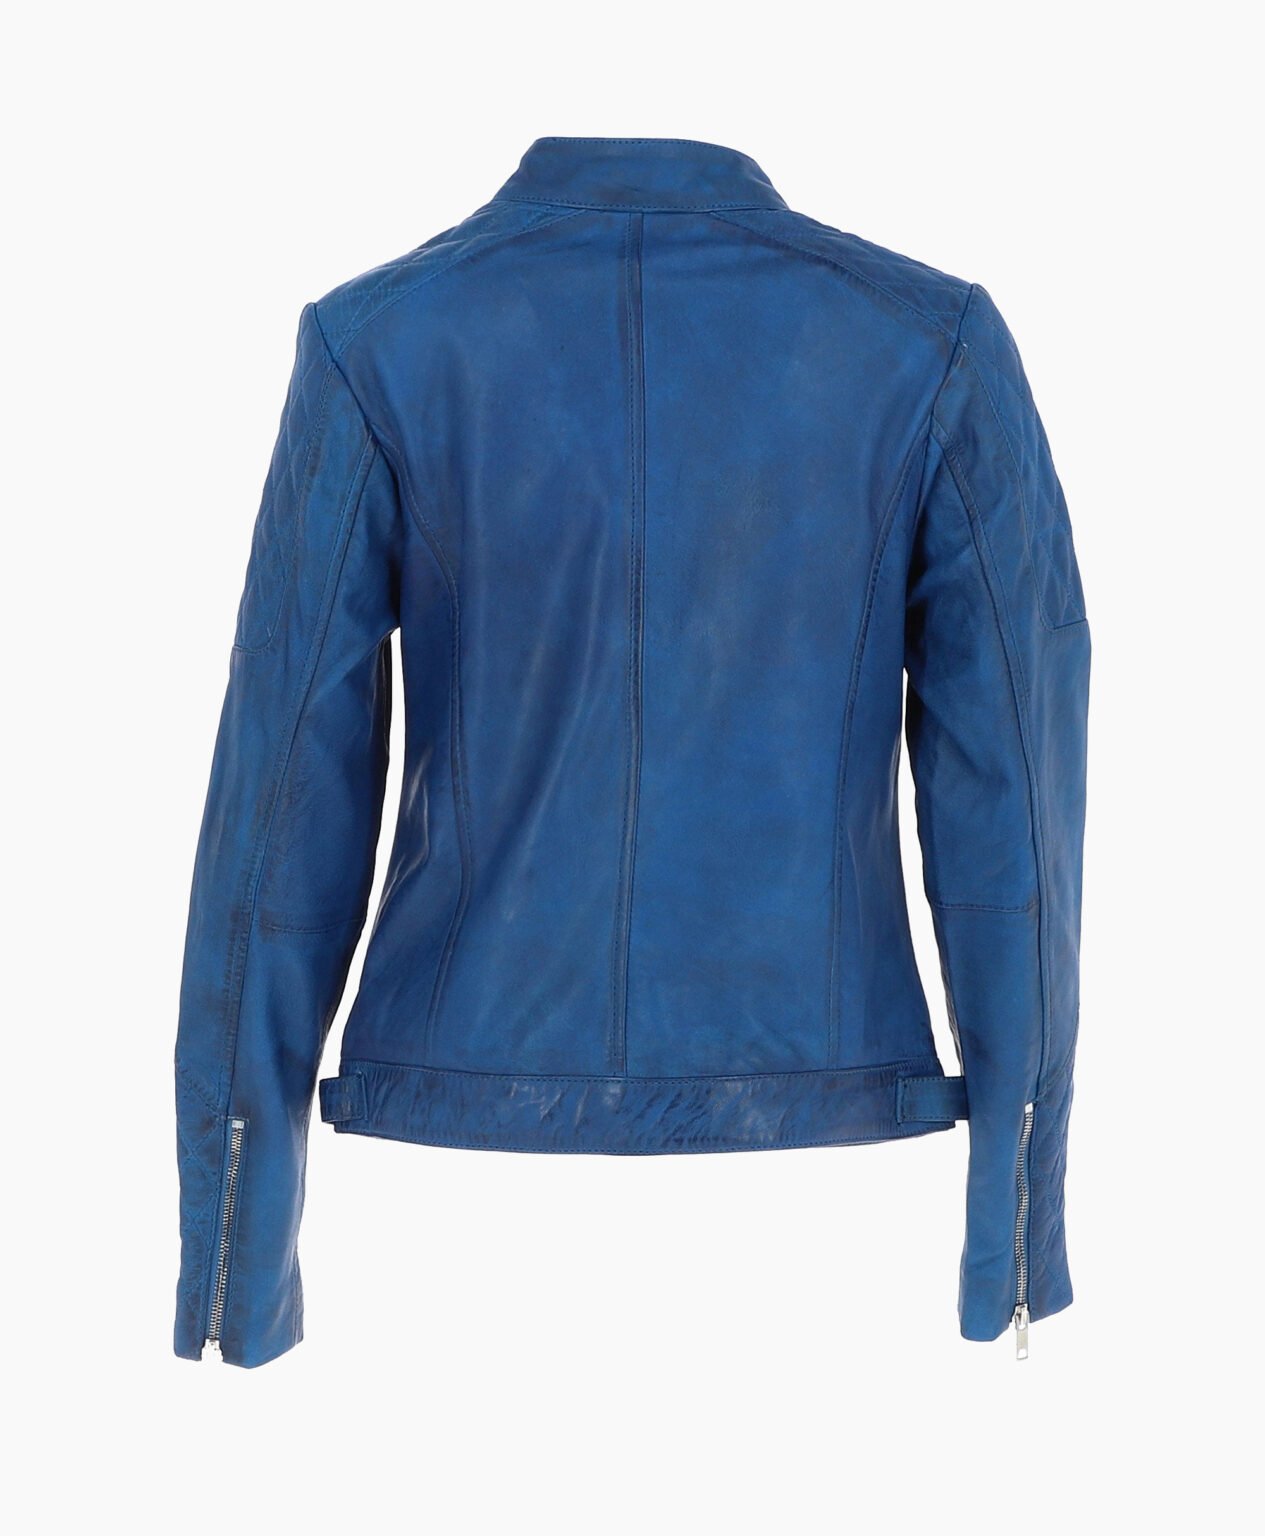 vogue-jacket-leather-jacket-blue-malibu-image202